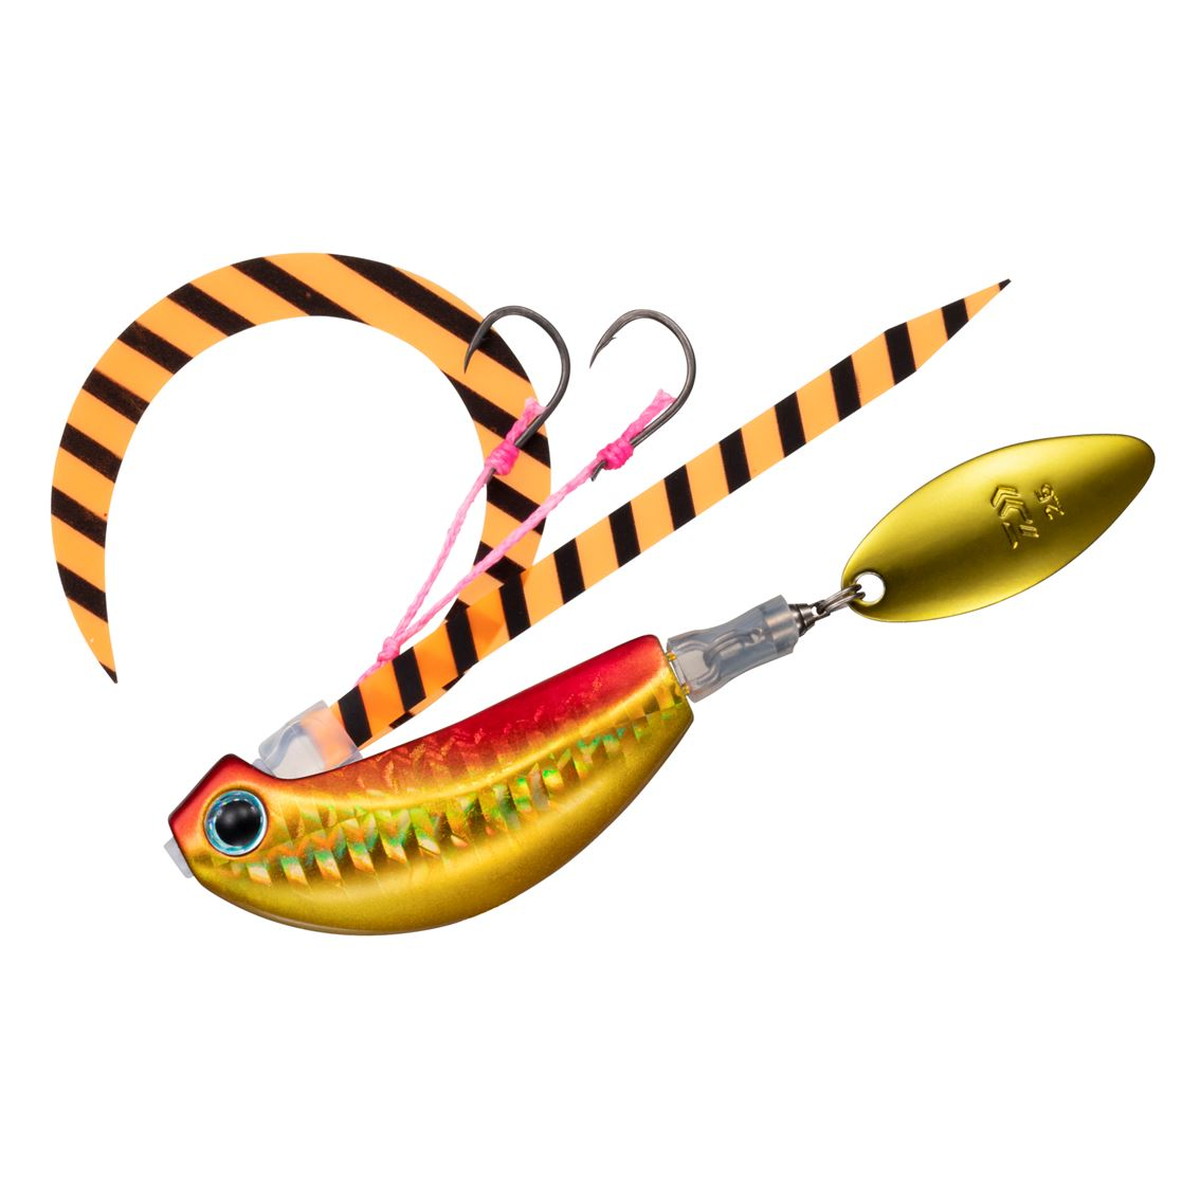 DAIWA（釣り） 紅牙ブレードブレイカー TG 玉神 100g PHアカキン 紅牙 メタルジグの商品画像